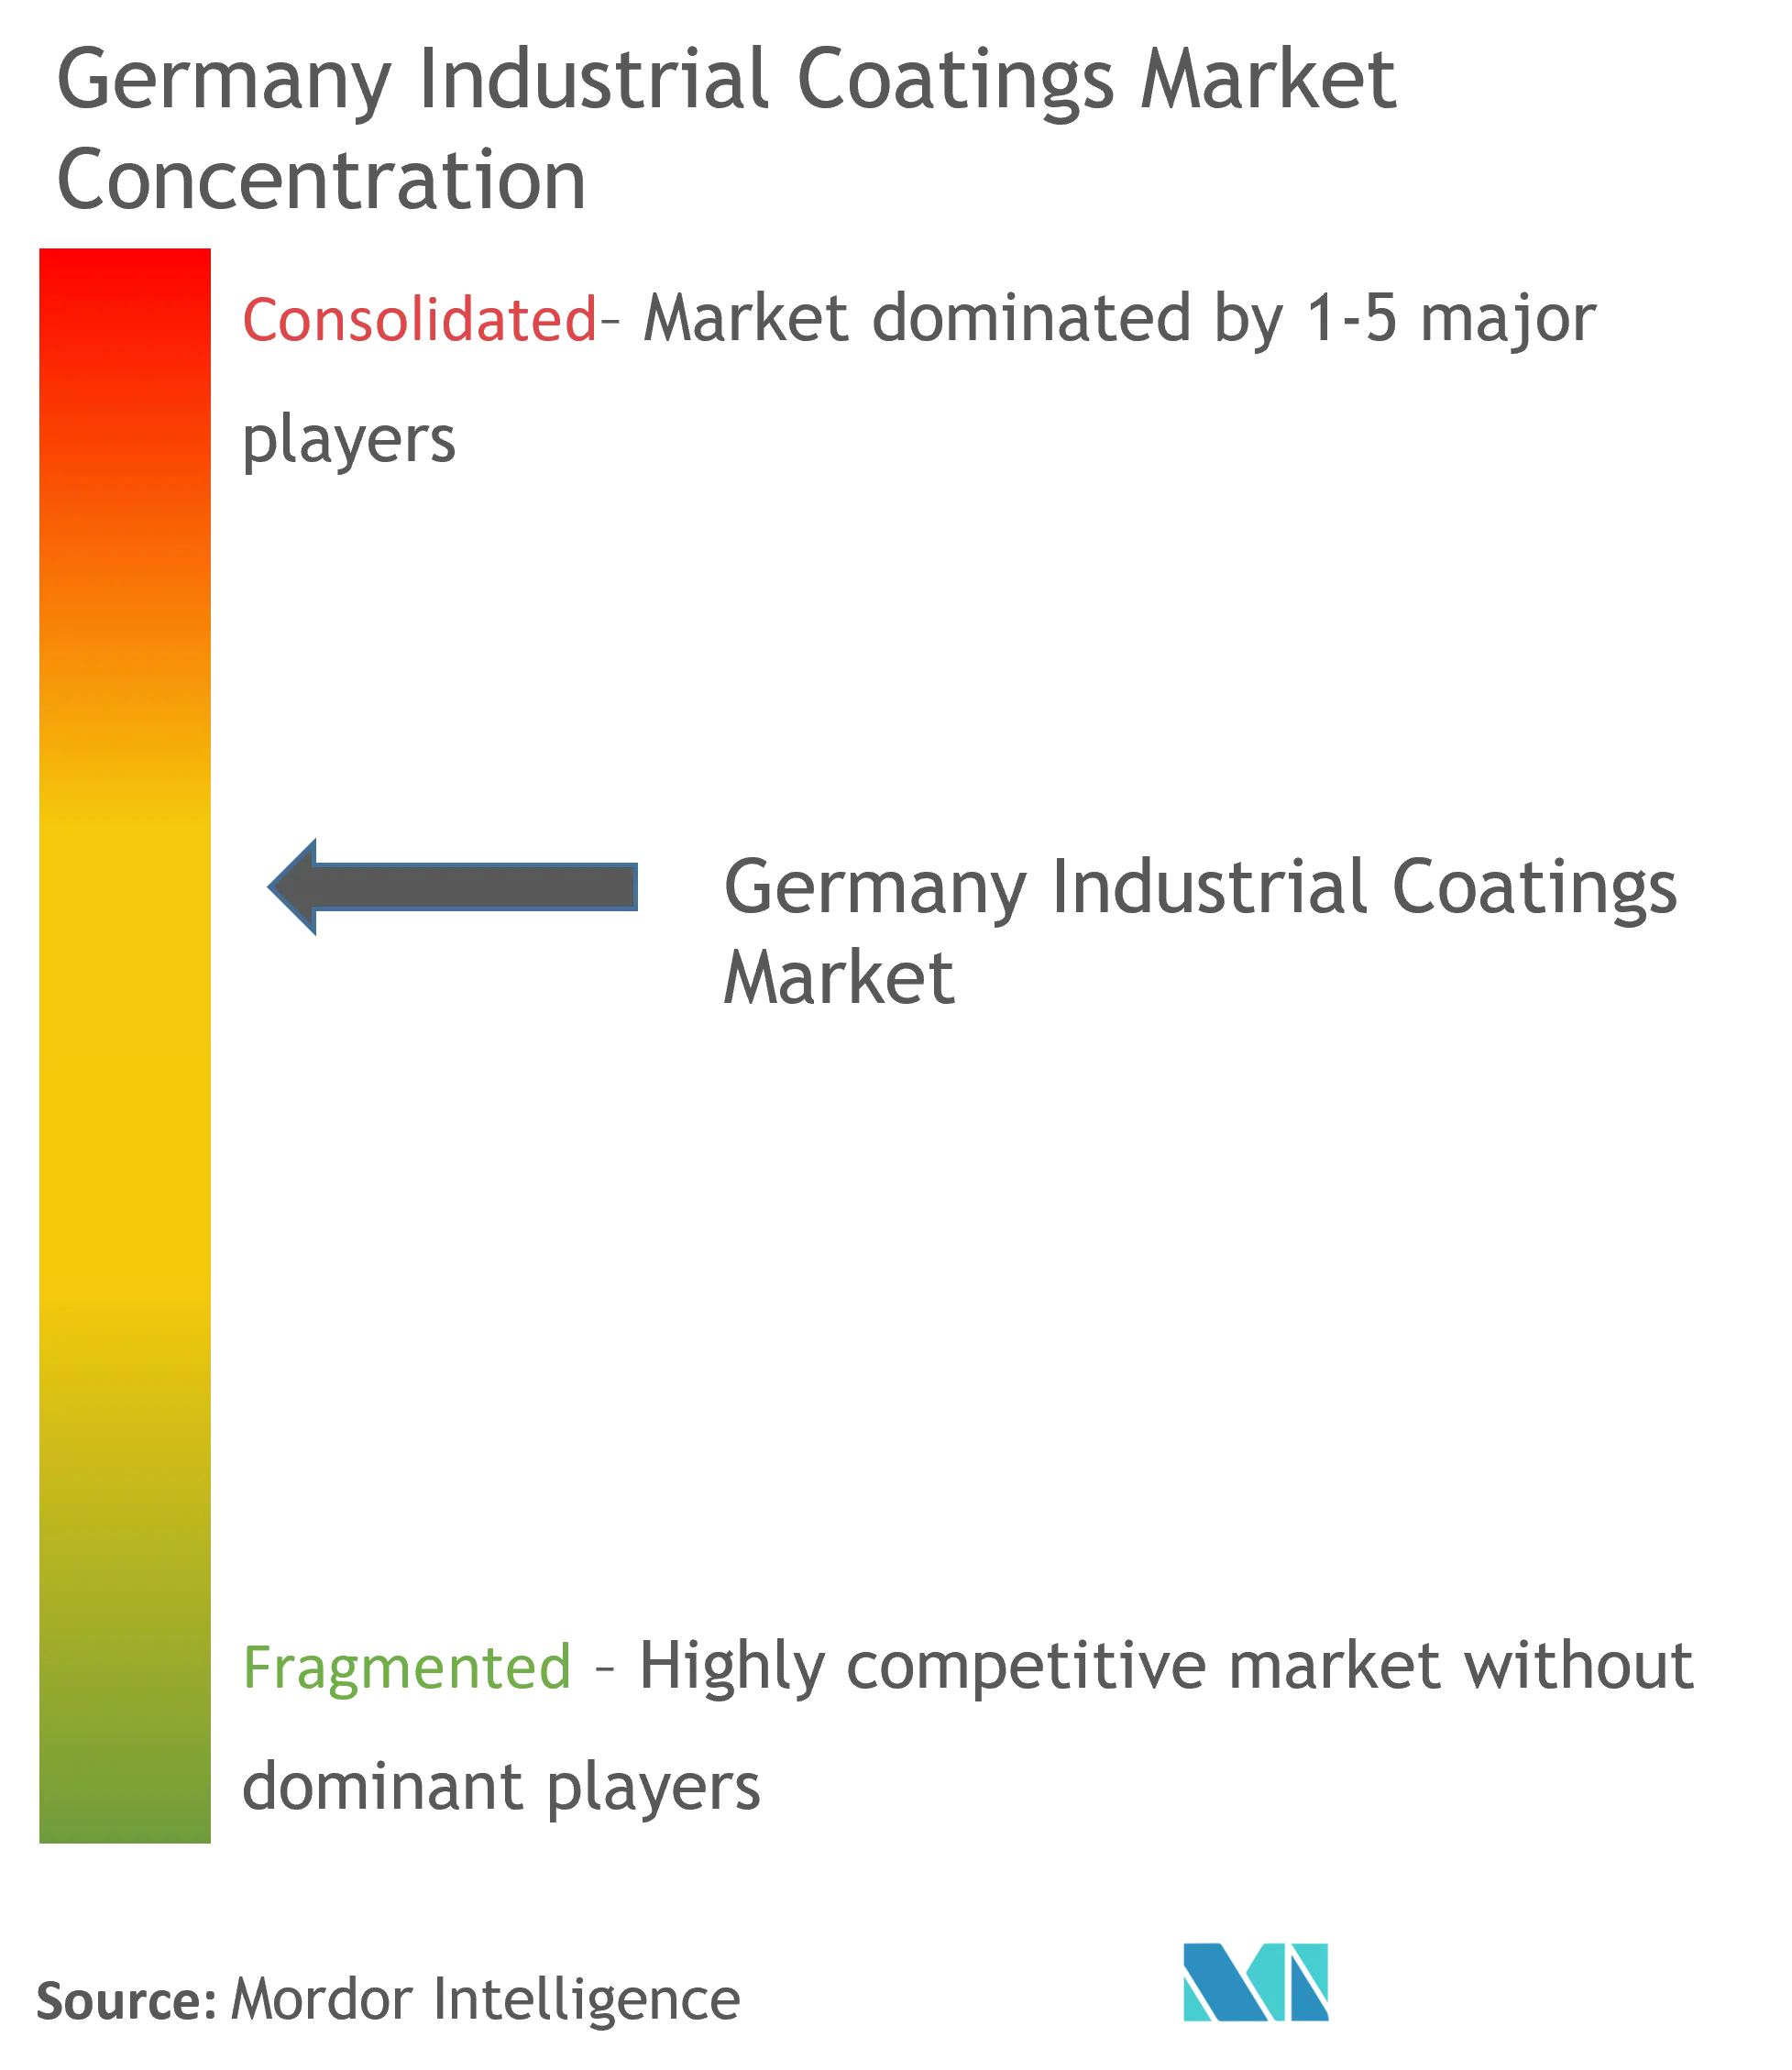 تركيز سوق الطلاءات الصناعية في ألمانيا